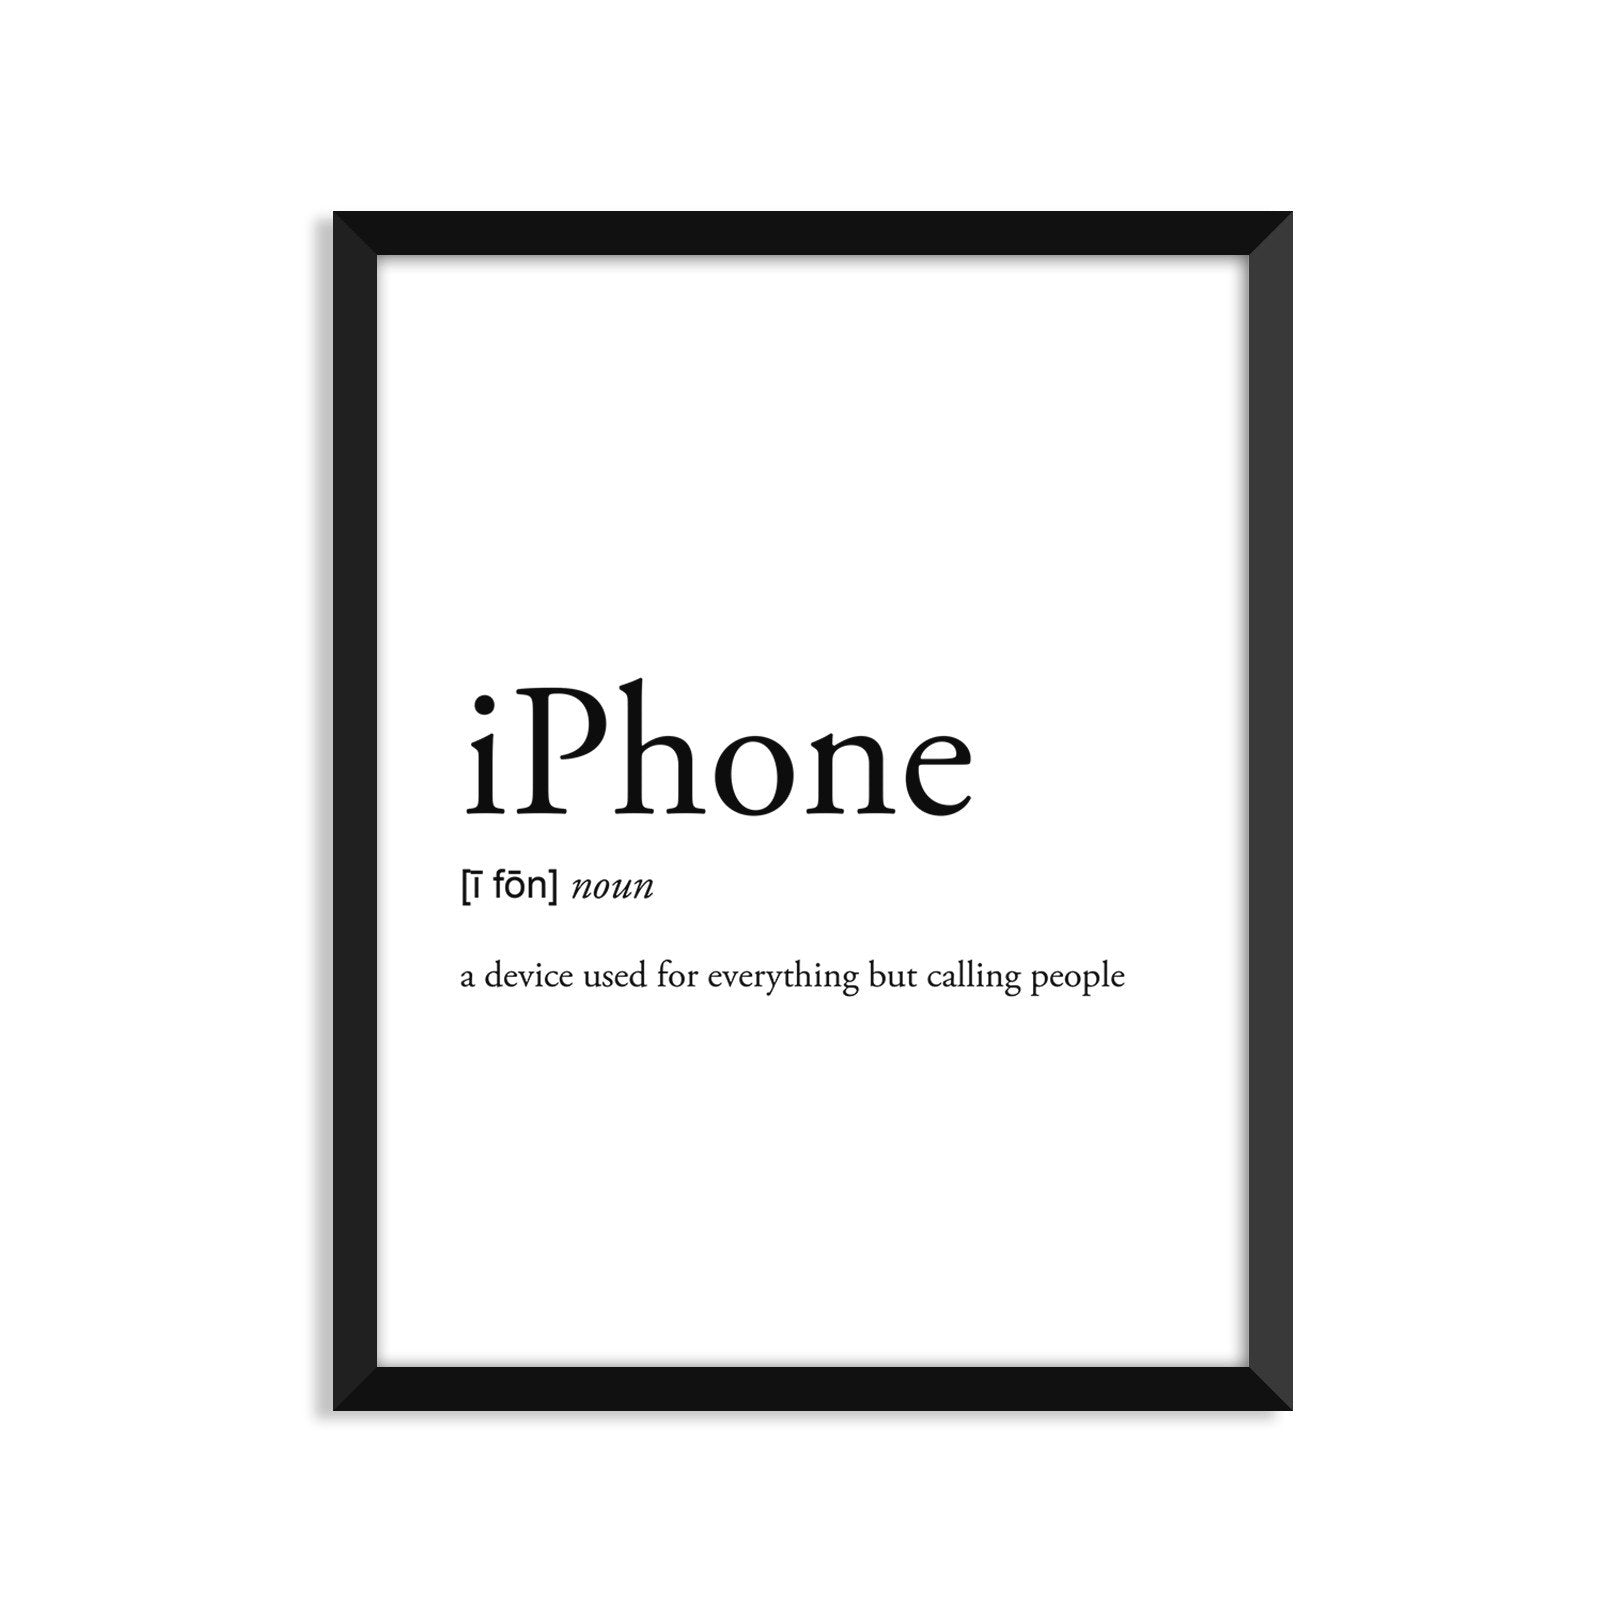 iphone noun greeting card